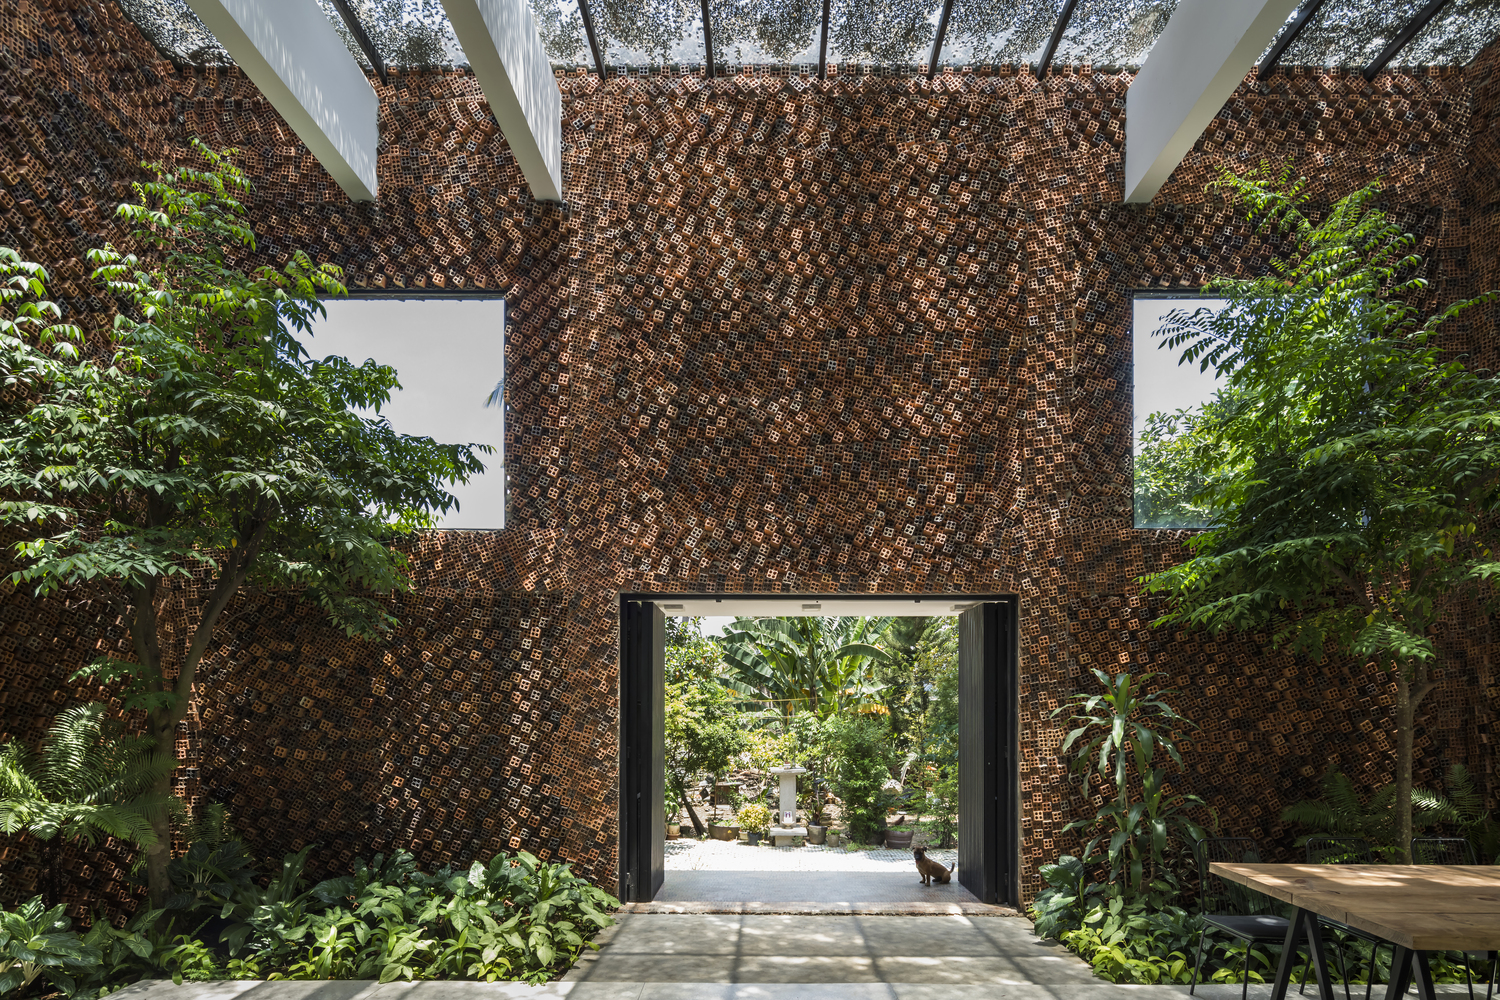 Wall House do đội ngũ Creative Architects thiết kế với mặt tiền đẹp - độc - lạ như một tổ ong khổng lồ nổi bật.